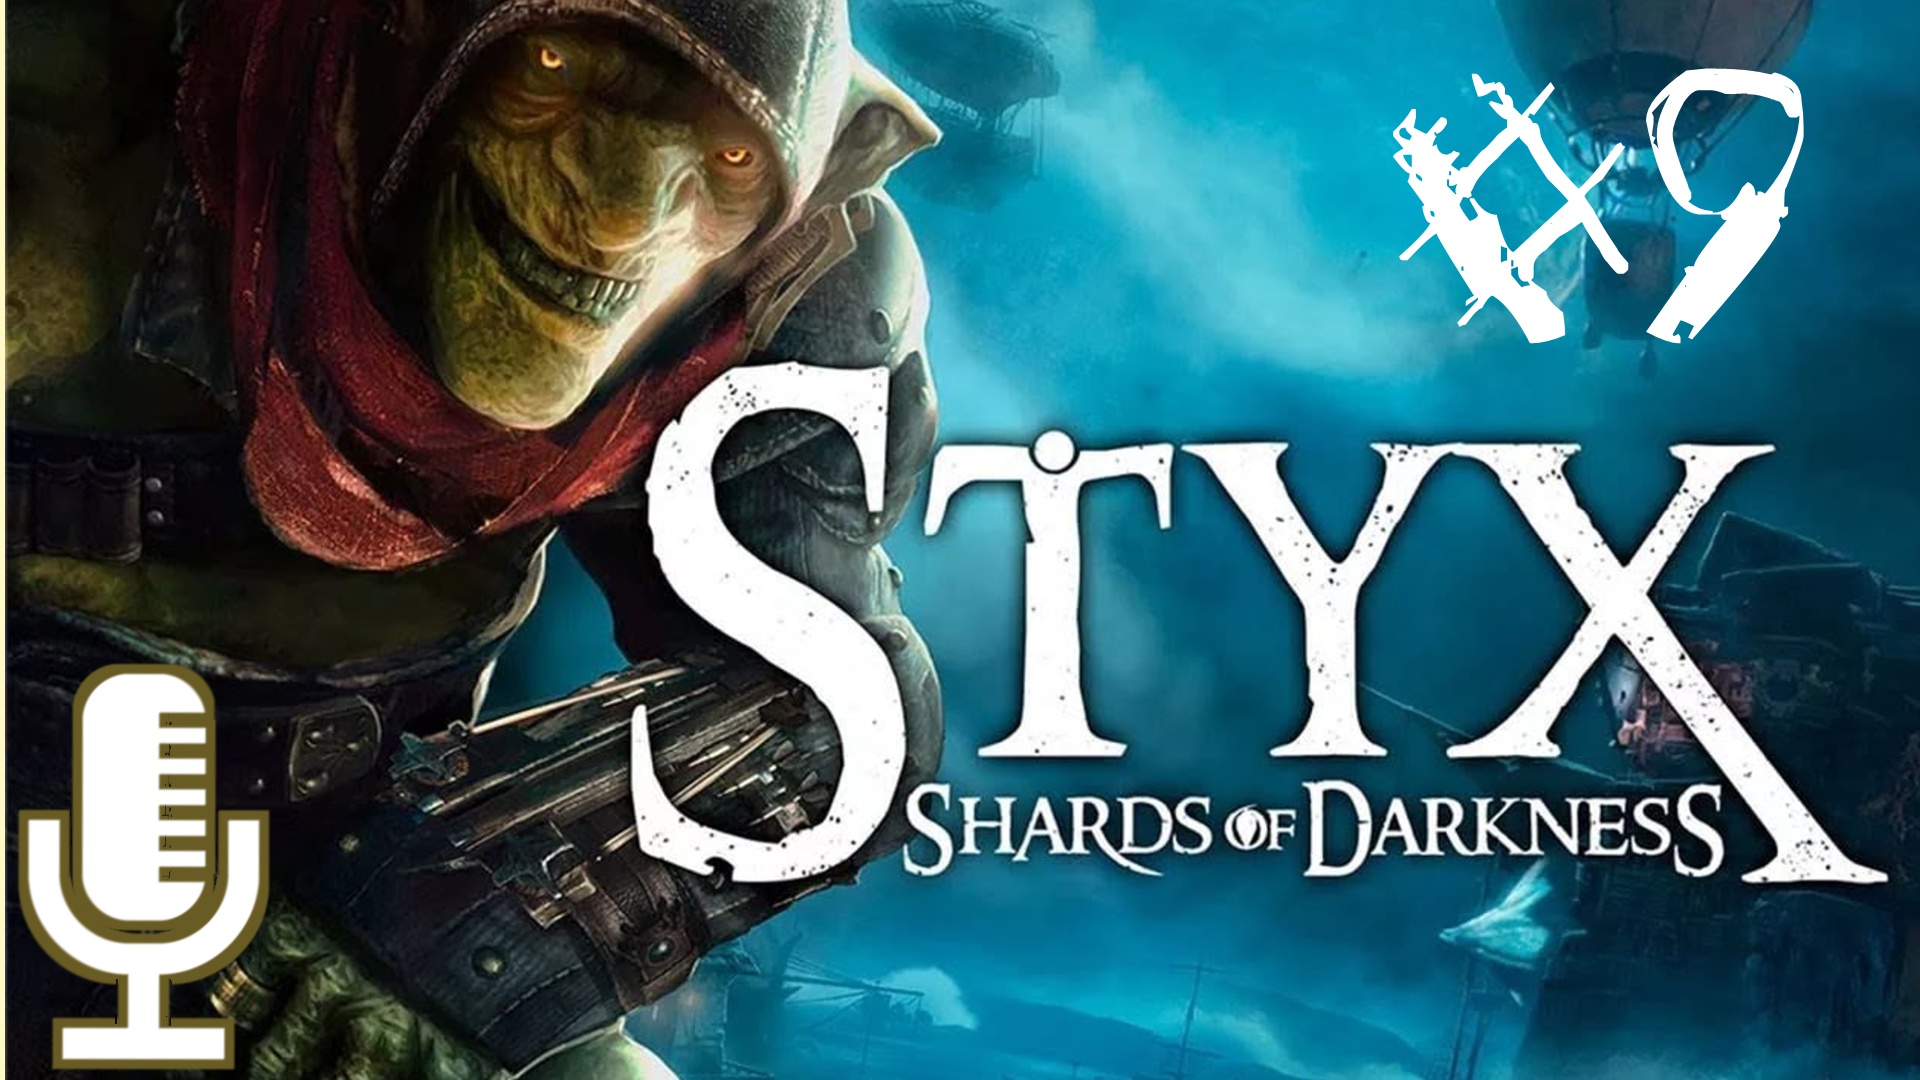 ?Styx: Shards of Darkness▶Миссия 4: То, что скрыто▶Прохождение #9